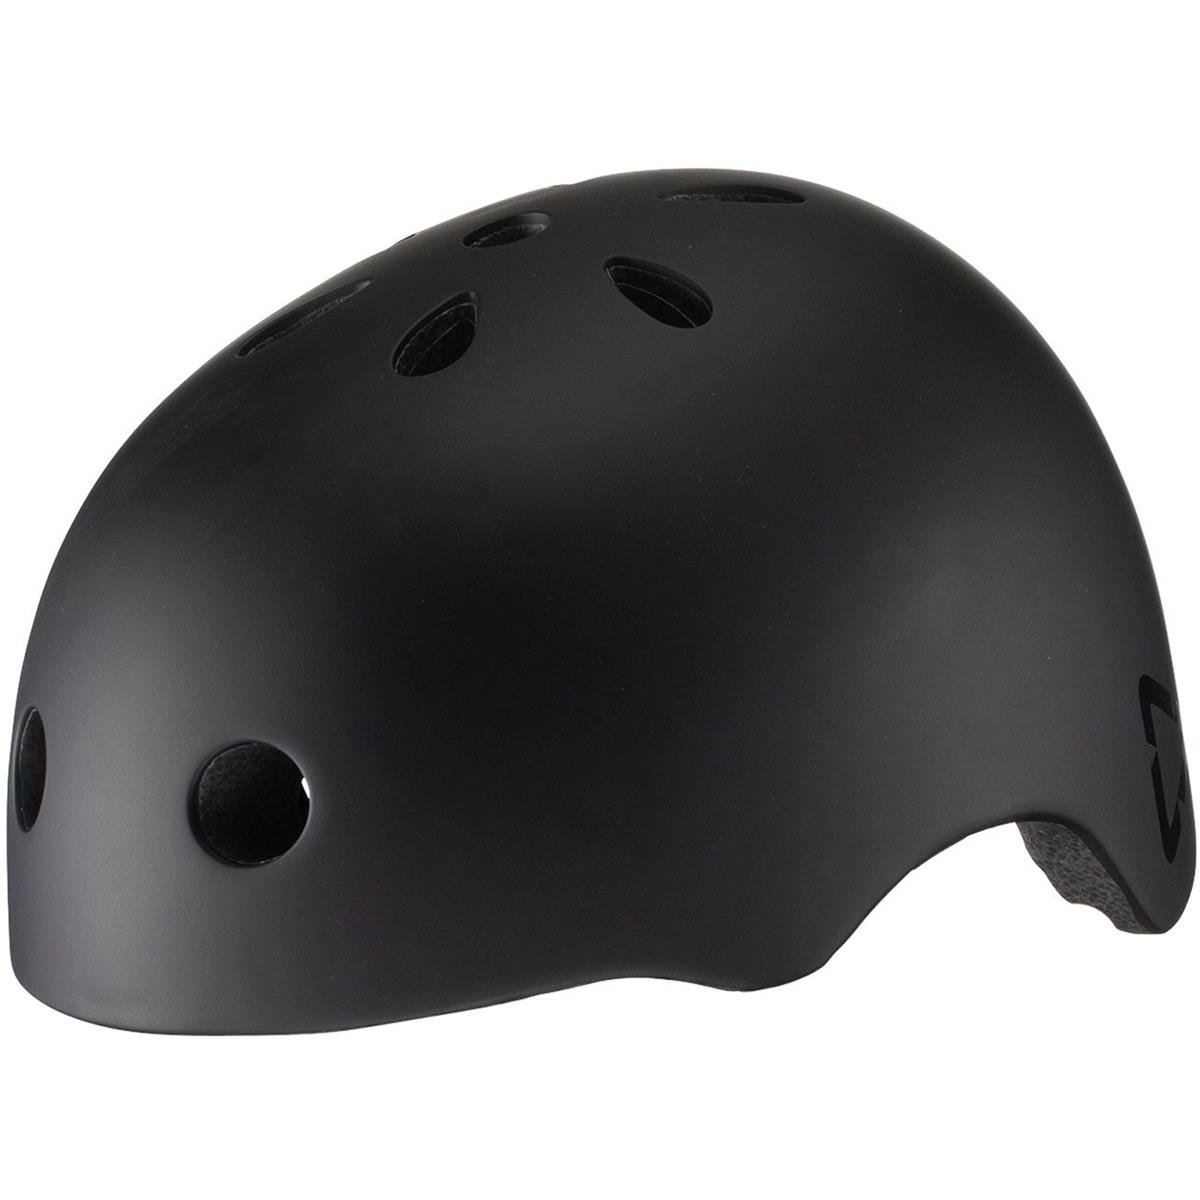 Leatt BMX/Dirt Helm 1.0 Urban Schwarz